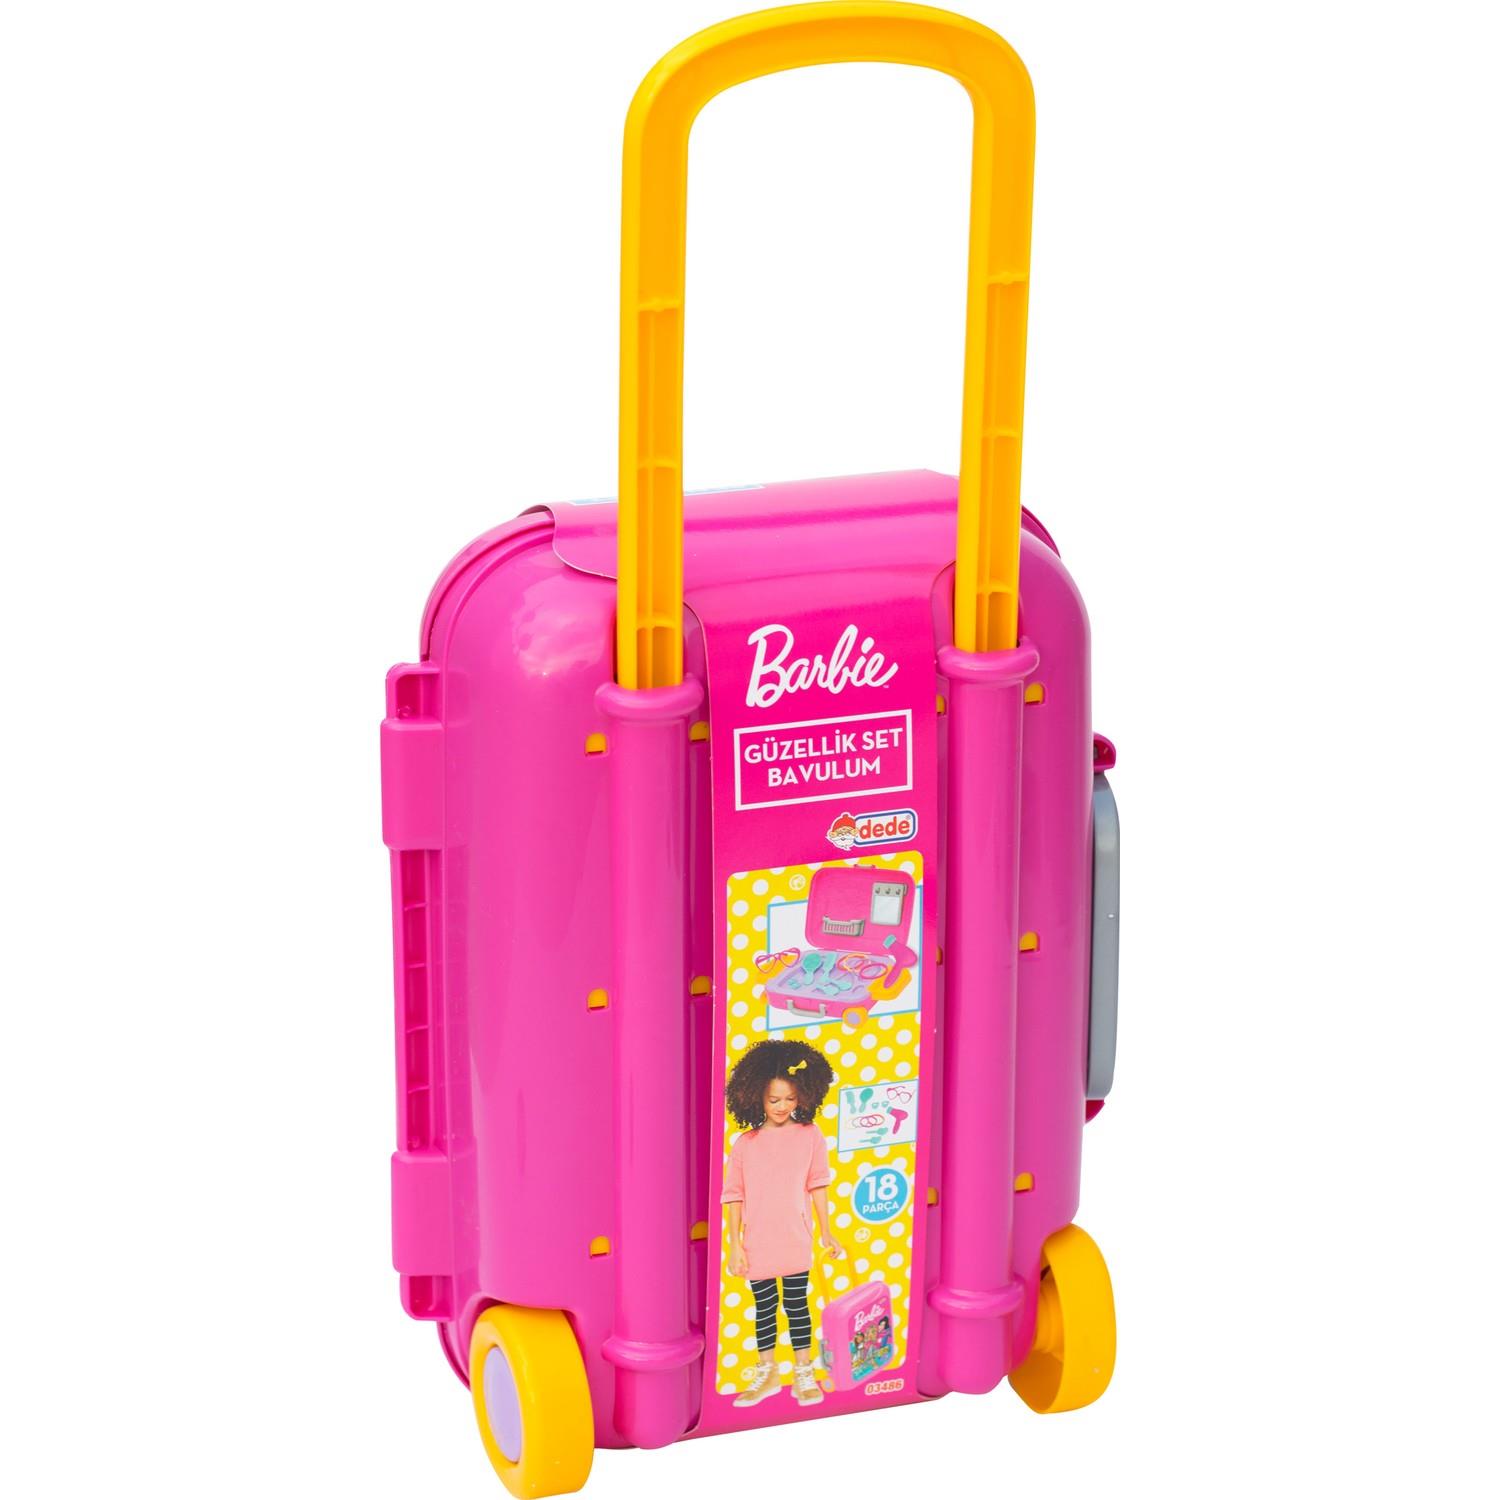 Barbie Güzellik Set Bavulum 3+ Yaş